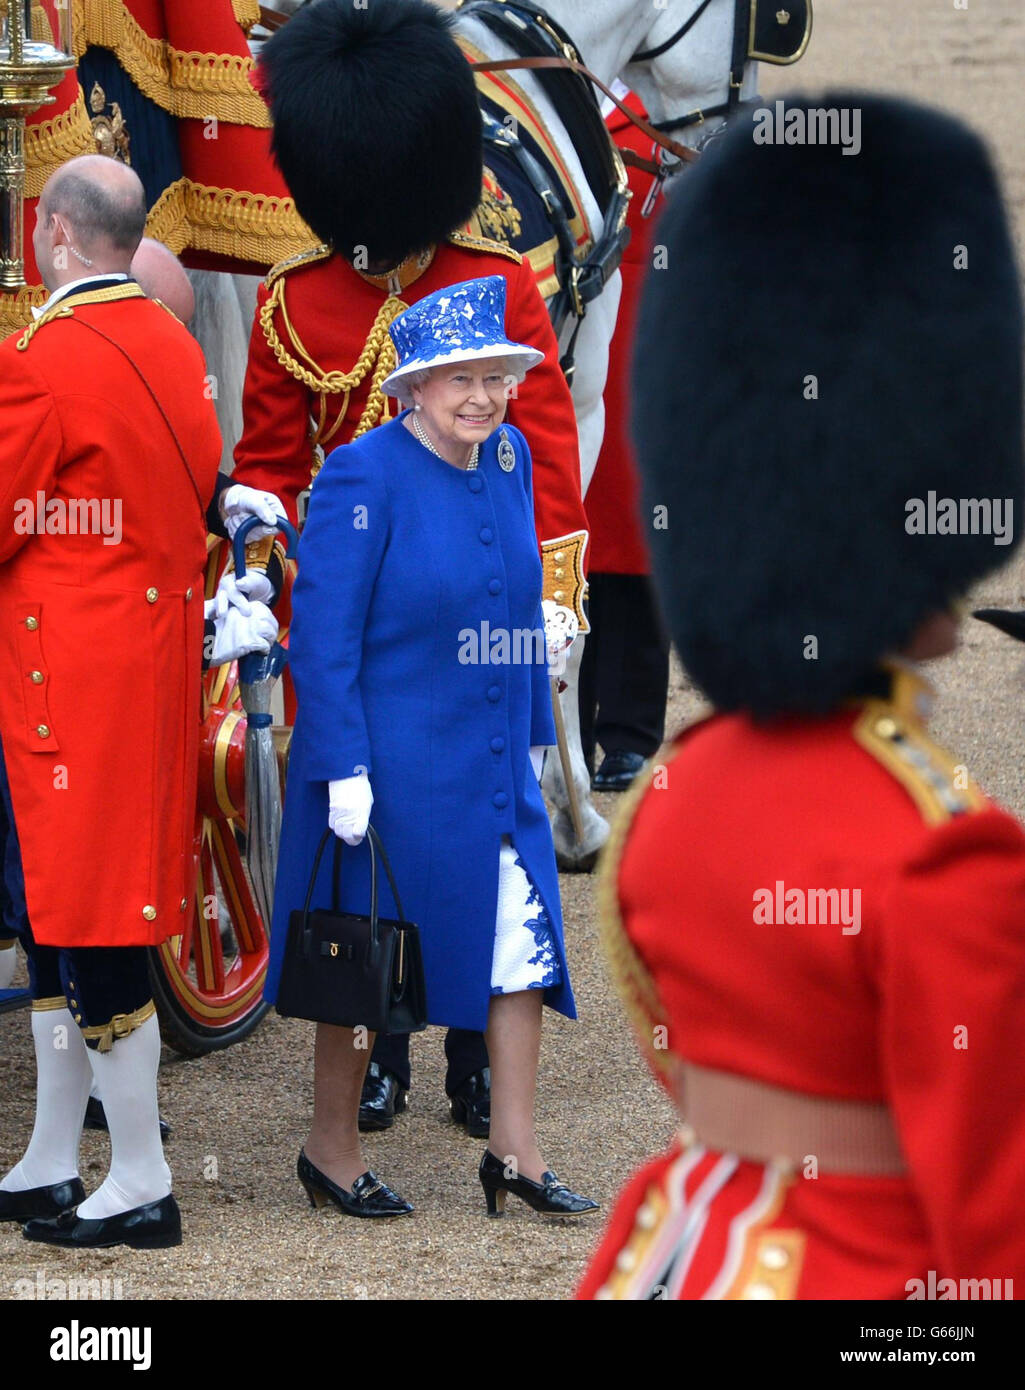 La reine Elizabeth II arrive à Horse Guards Parade, Londres, pour assister à Trooping the Color. Banque D'Images